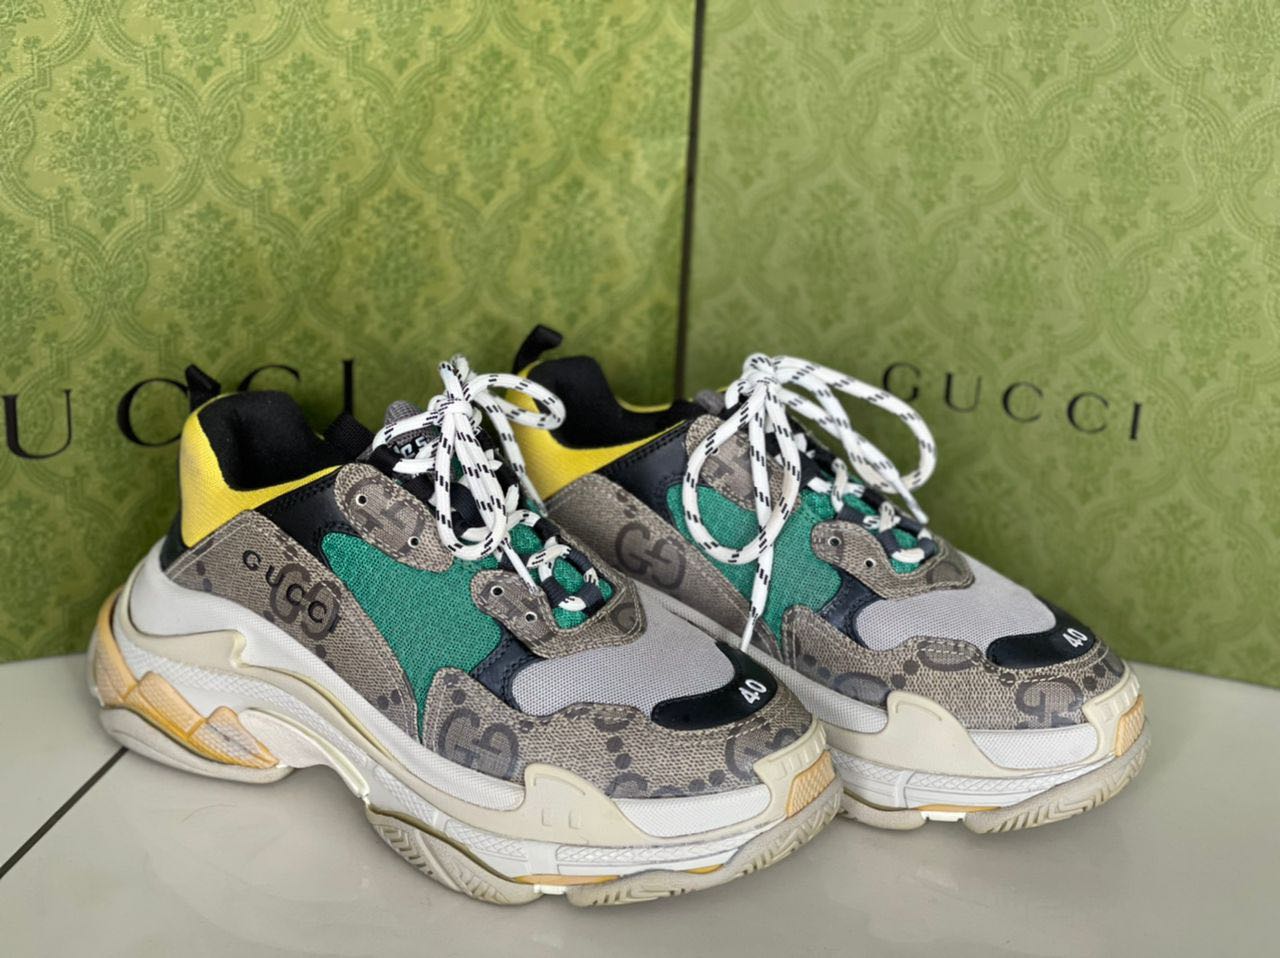 Gucci x Balenciaga làm sống lại đôi giày thể thao Triple S